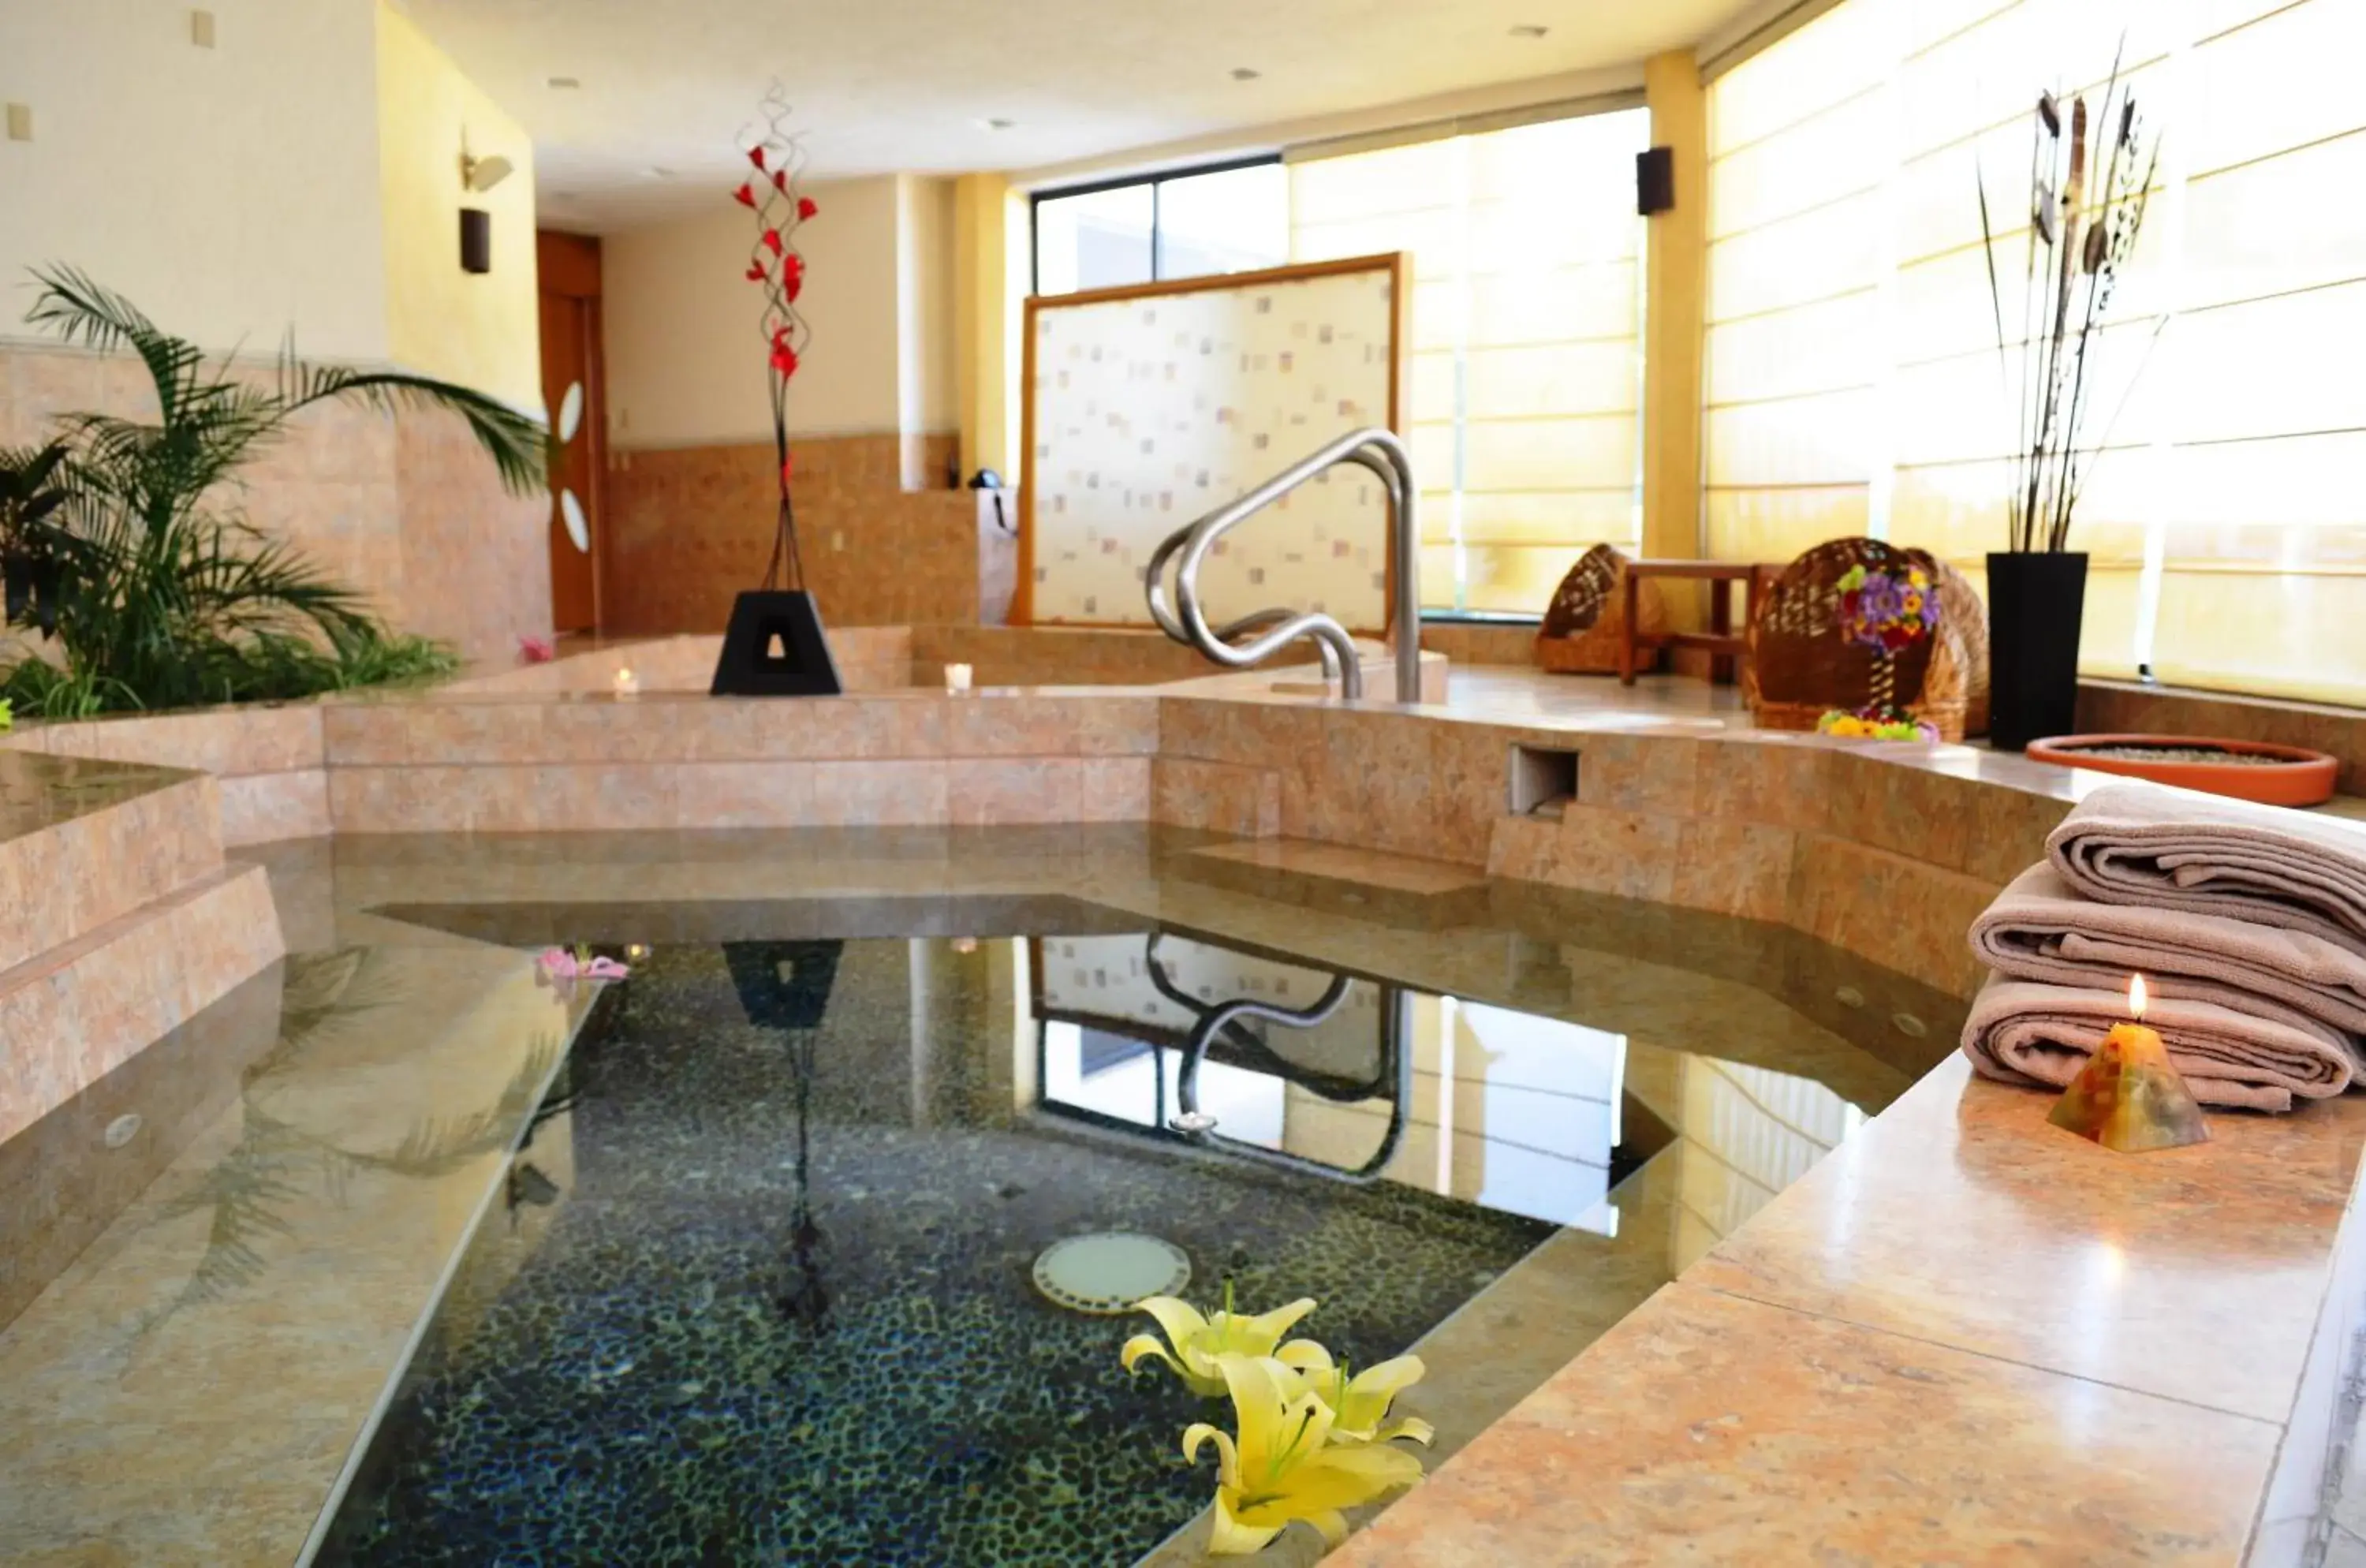 Spa and wellness centre/facilities, Bathroom in Hotel Coral Cuernavaca Resort & Spa